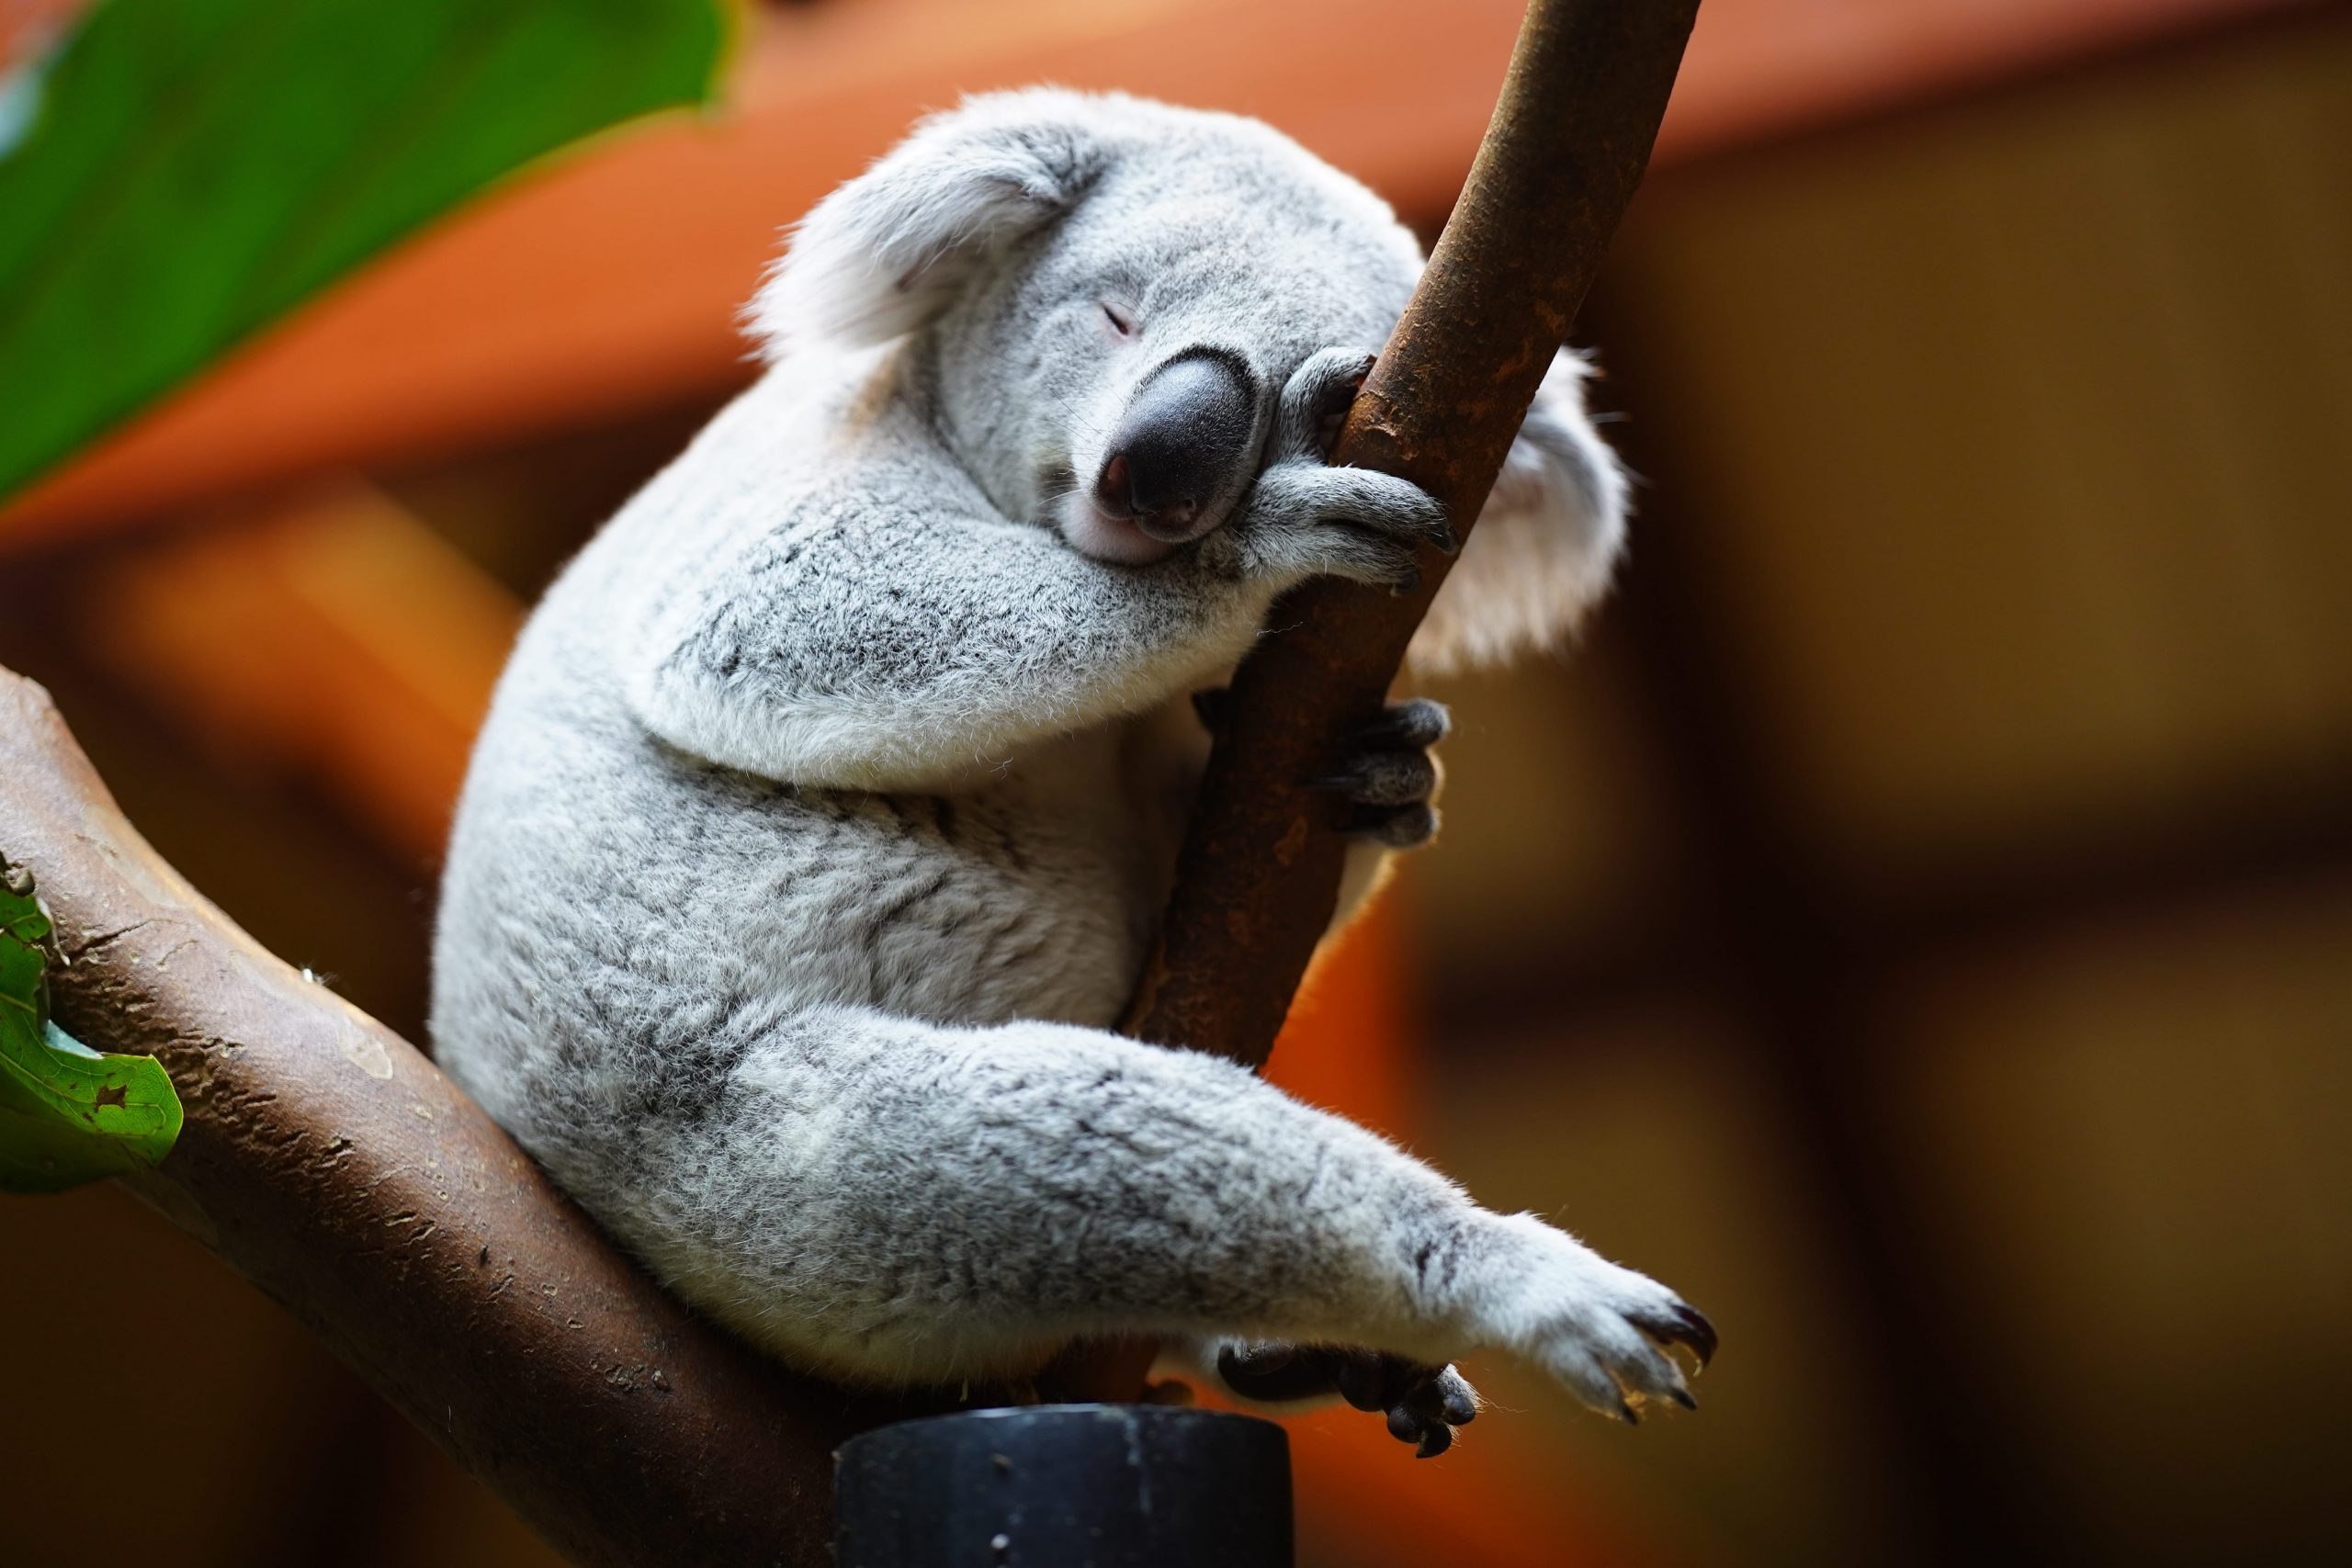 Comment S Appelle La Femelle Du Koala Koala : Mode de vie, Comportement et Alimentation - Faune sauvage — Autour  Des Animaux